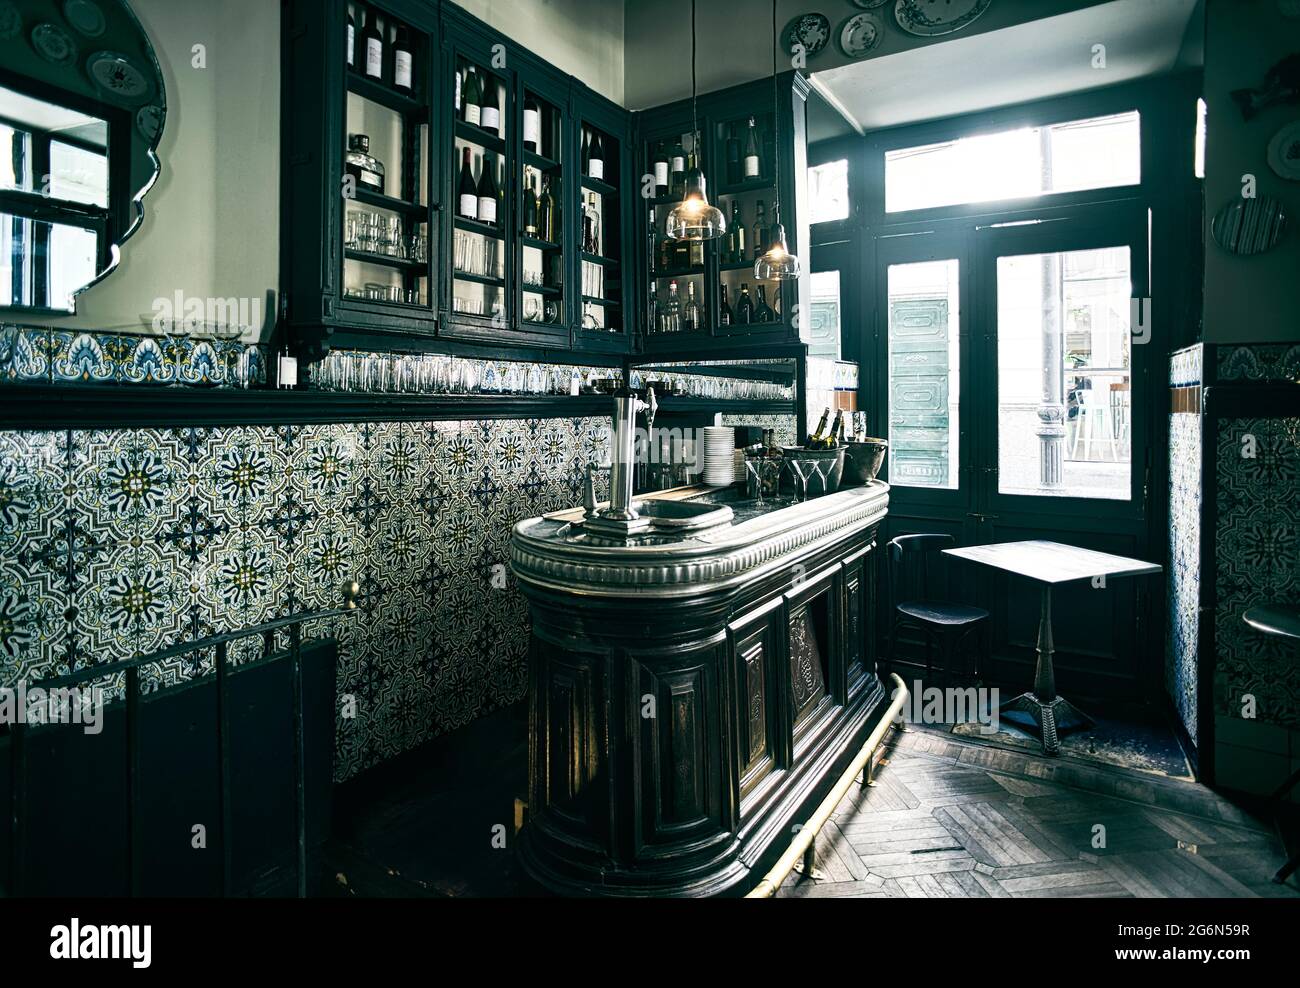 Das Innere einer klassischen spanischen Taverne ist mit Fliesen dekoriert. Innenstadt Von Madrid, Spanien. Stockfoto